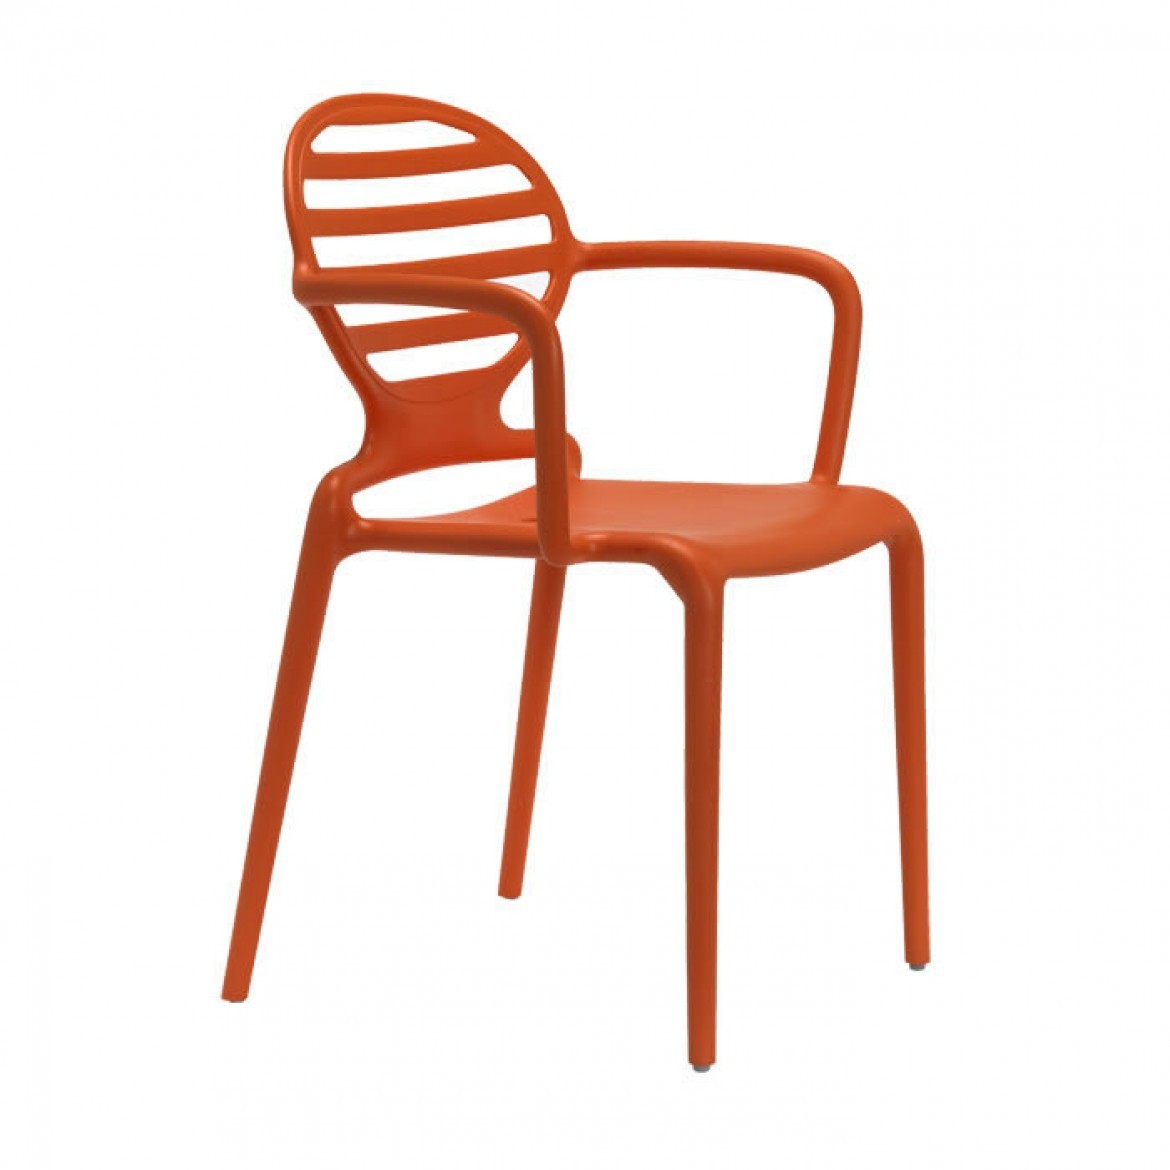 Gartenstuhl orange Kunststoff, Stuhl mit Armlehne orange für den Garten